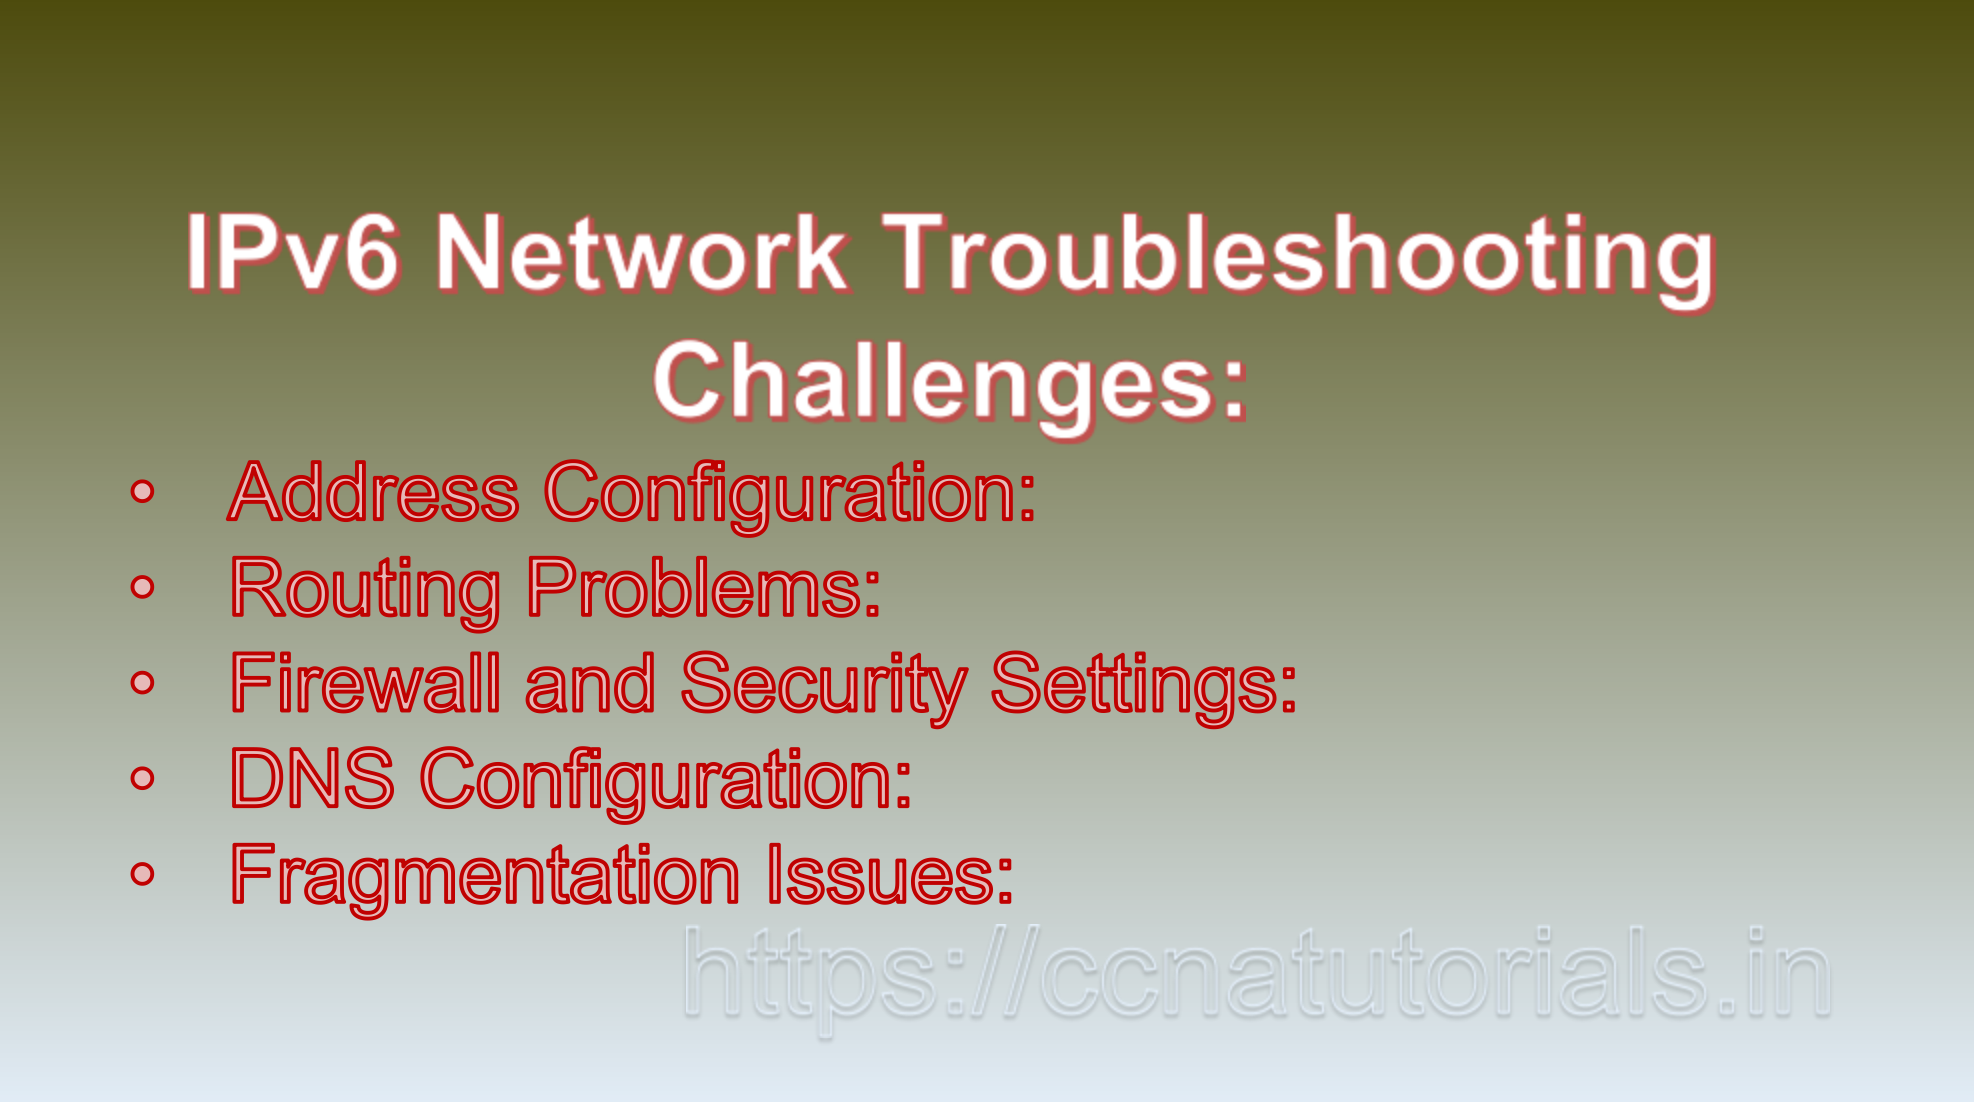 IPv6 Network Troubleshooting, ccna, ccna tutorials